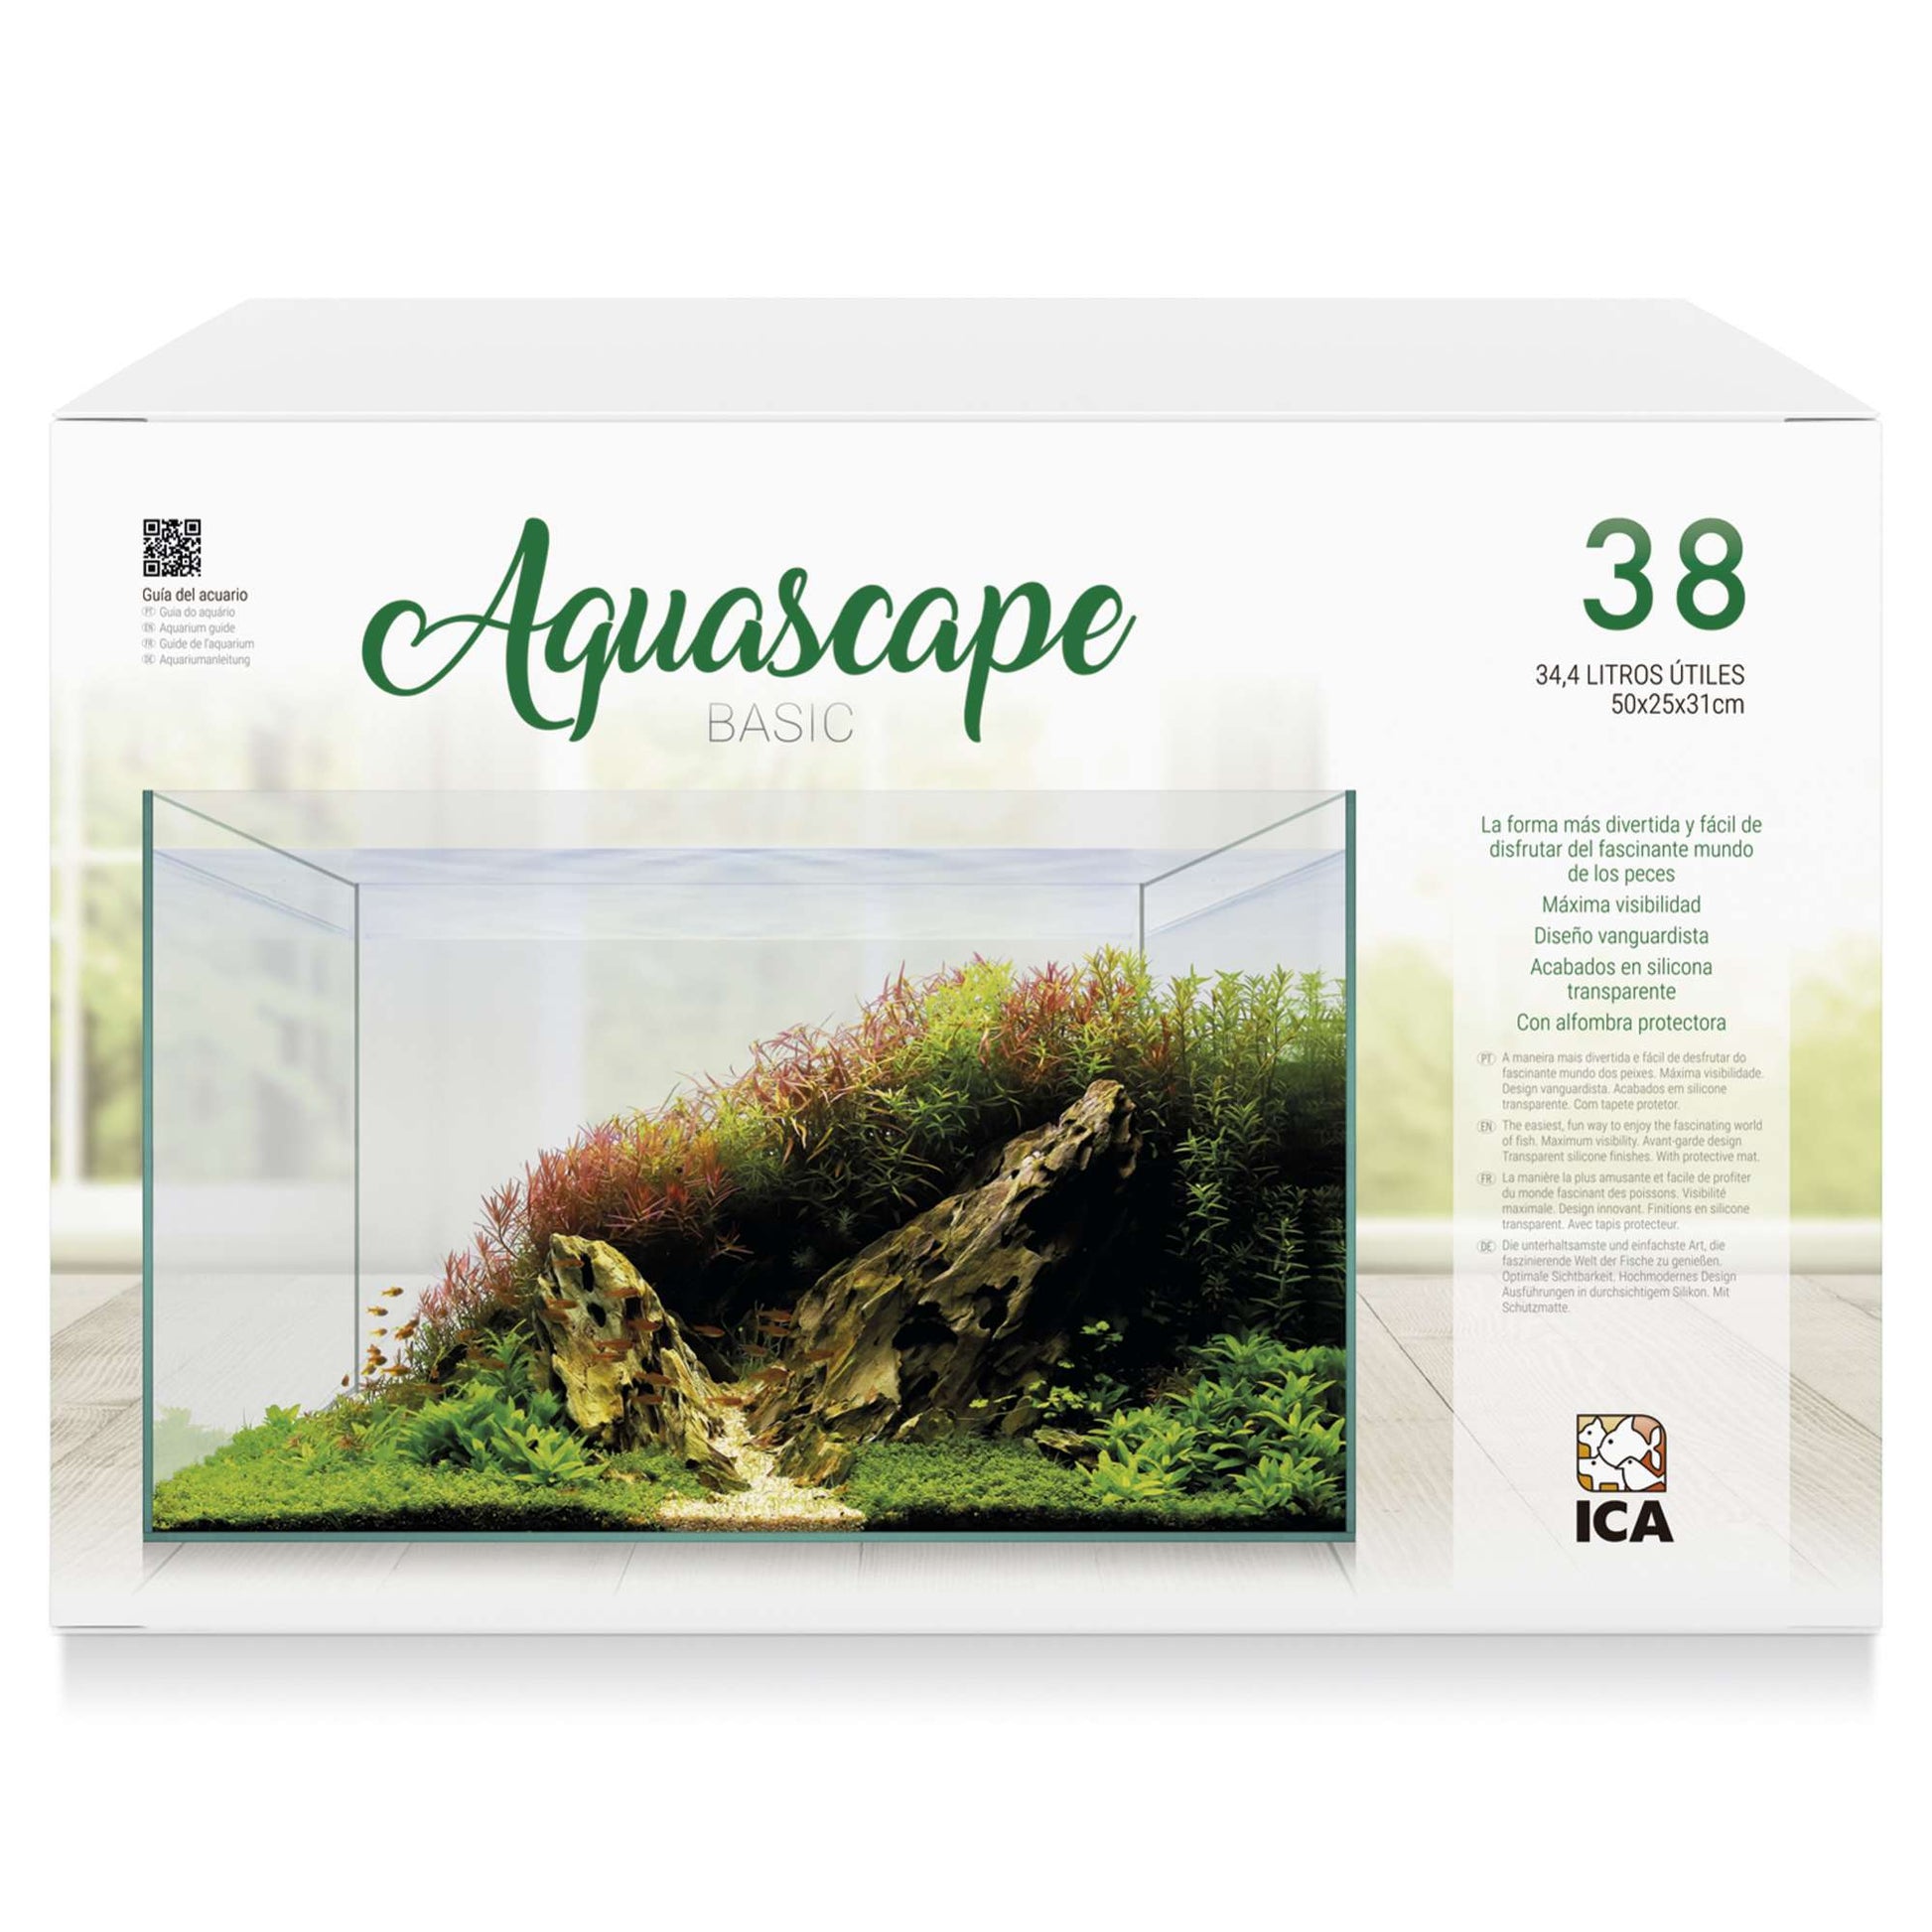 Aquascape basic 38  litros